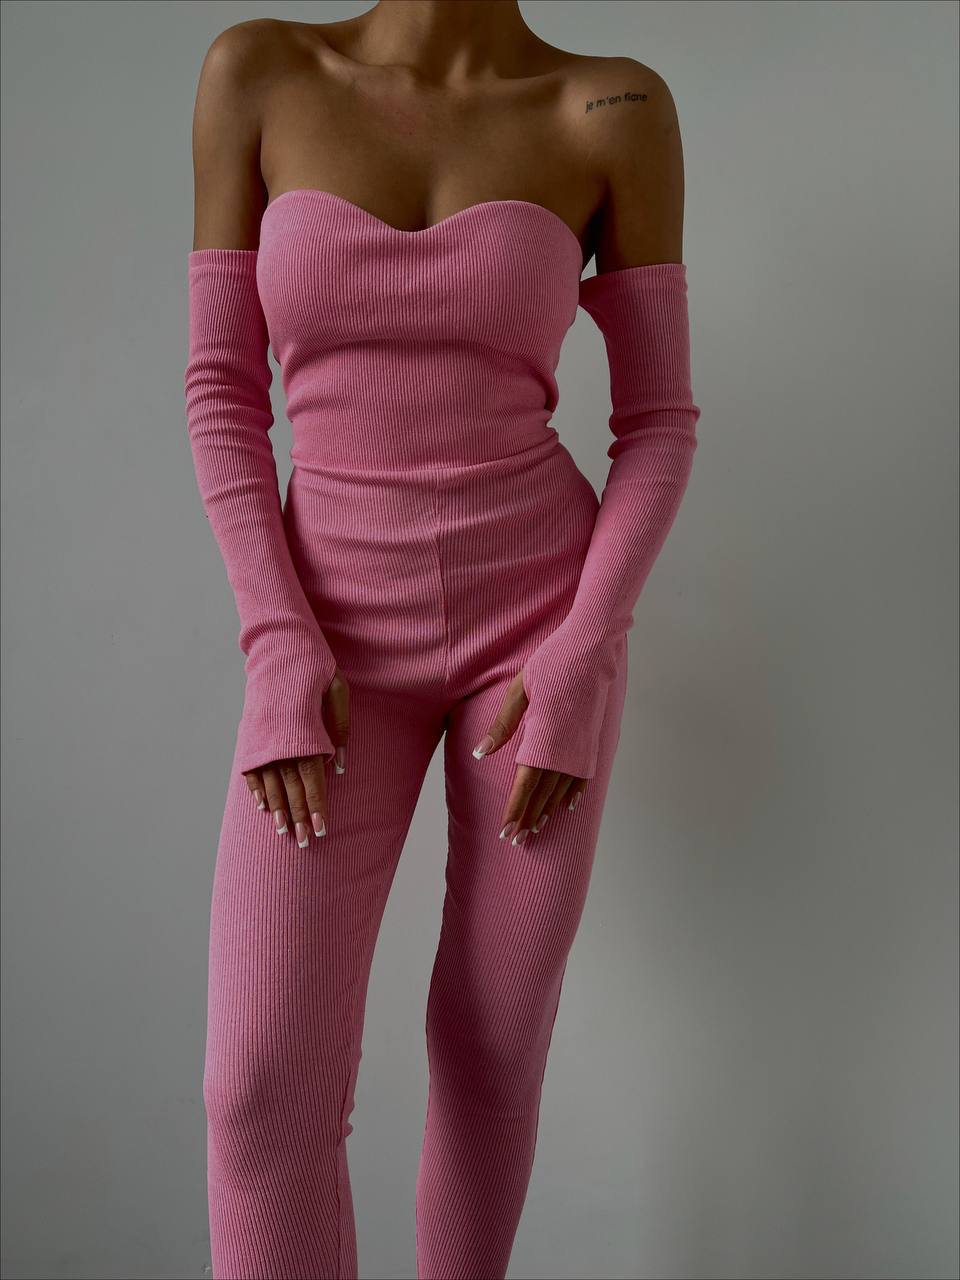 Дамски гащеризон DIVAN  https://bvseductive.com/products/women-s-jumpsuit-divan-2  дамски гащеризон в розов цвят изработен в изчистен и едноцветен дизайн с вталена кройка, подчертаваща фигурата модел с голи рамене и красиво деколте красиво предложение за Вашата визия